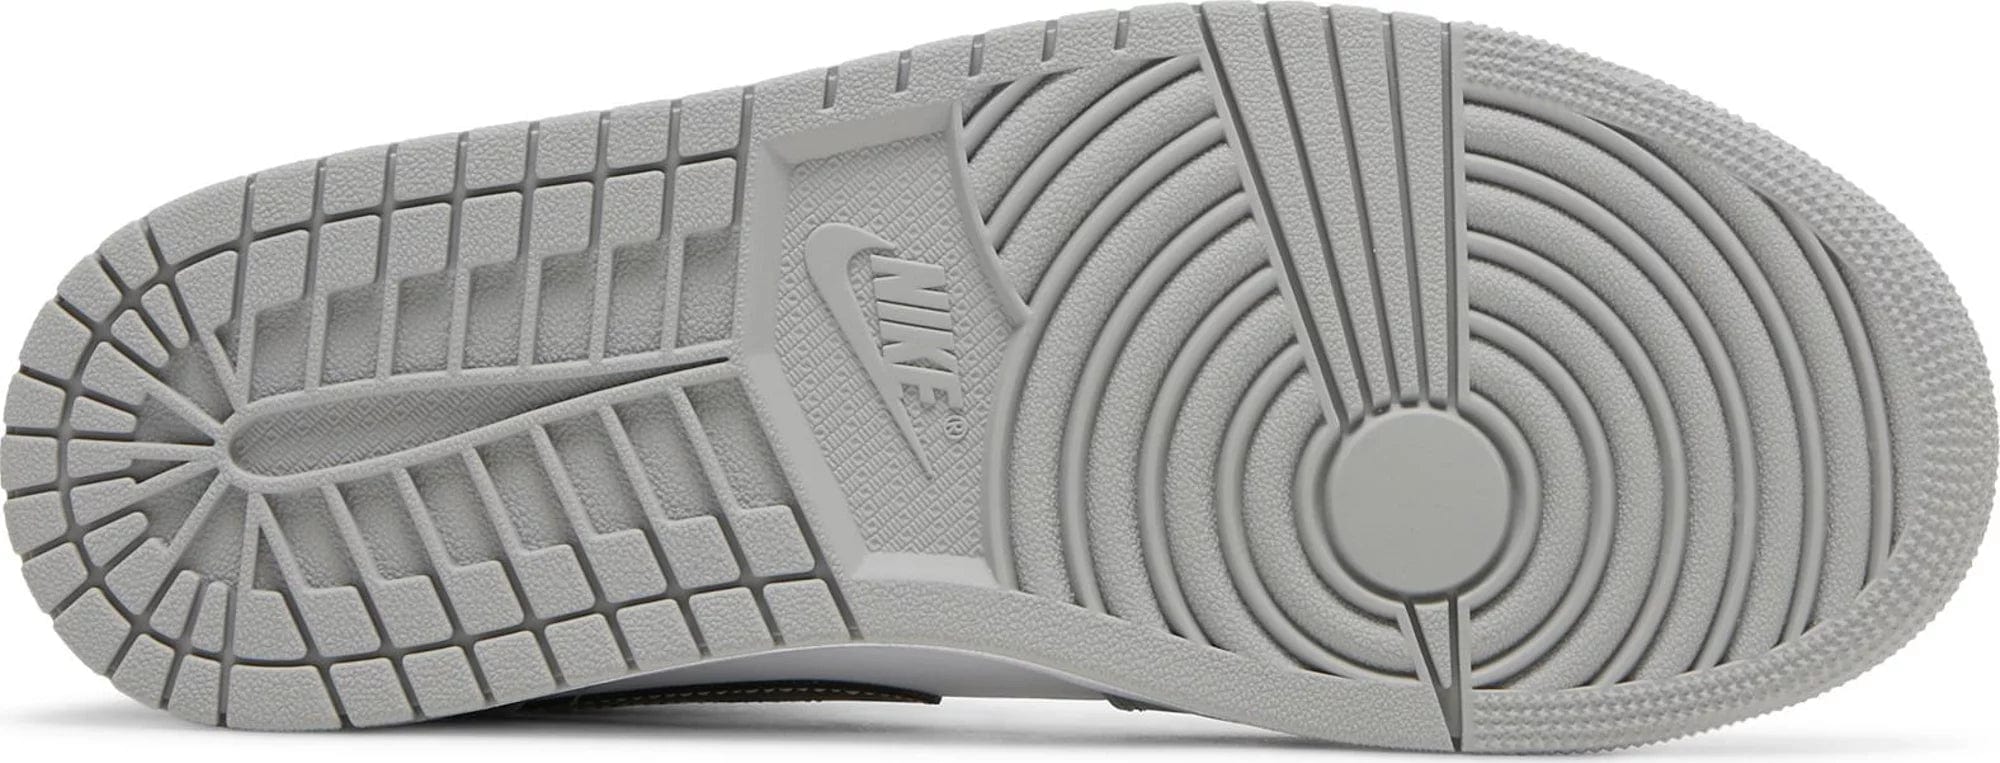 Nike Air Jordan 1 Mid Light Smoke Grey Anthracite Men's